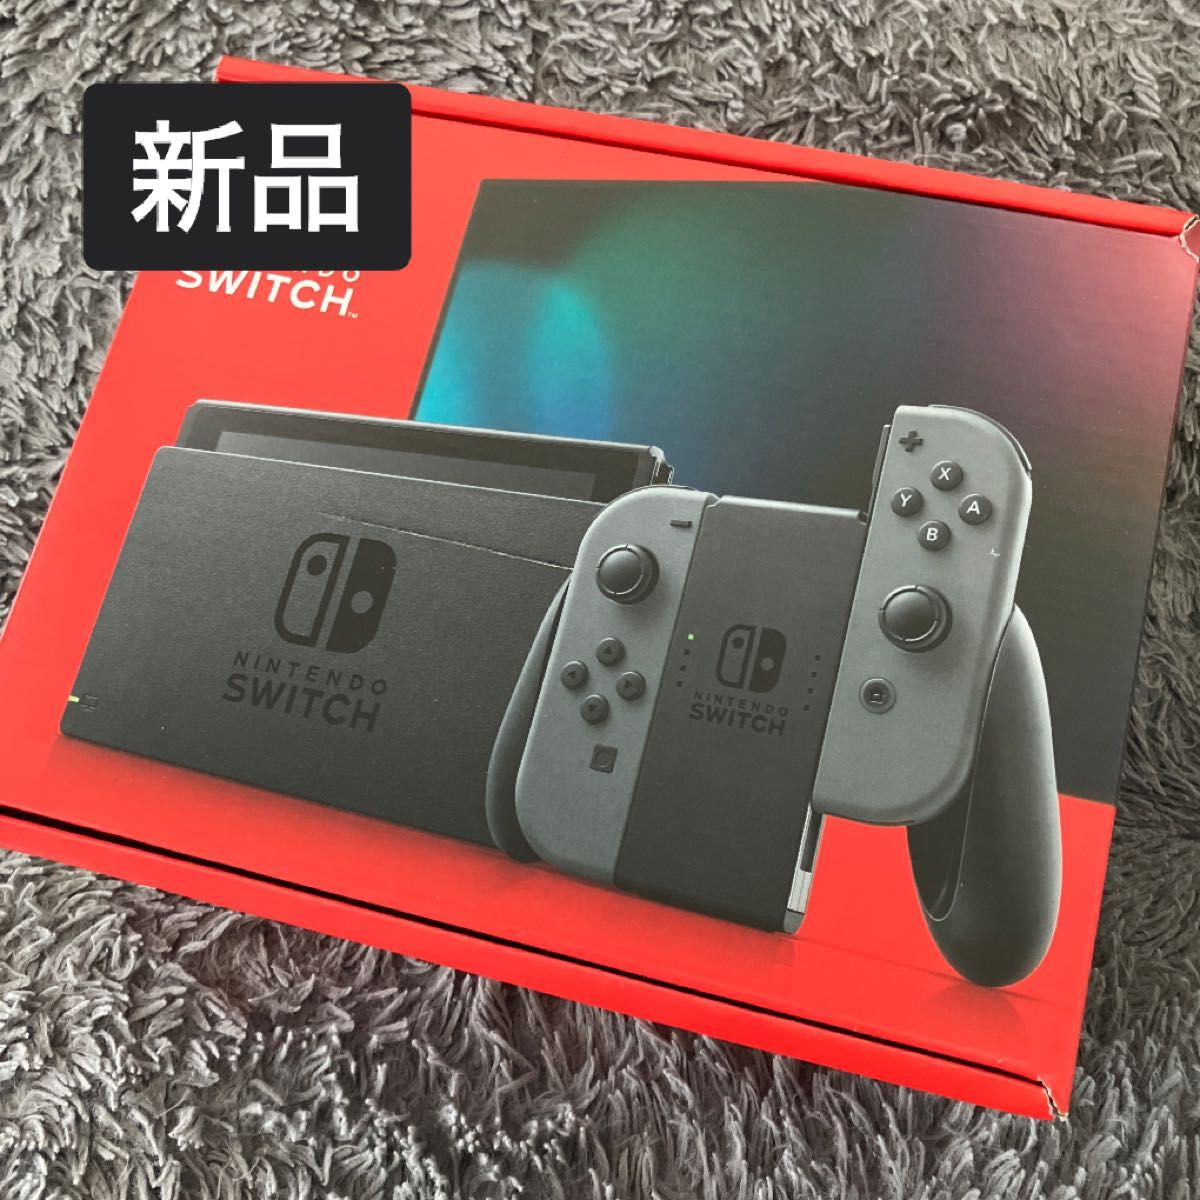 新品未開封 Nintendo Switch グレー 新パッケージ 小型 ニンテンドースイッチ本体